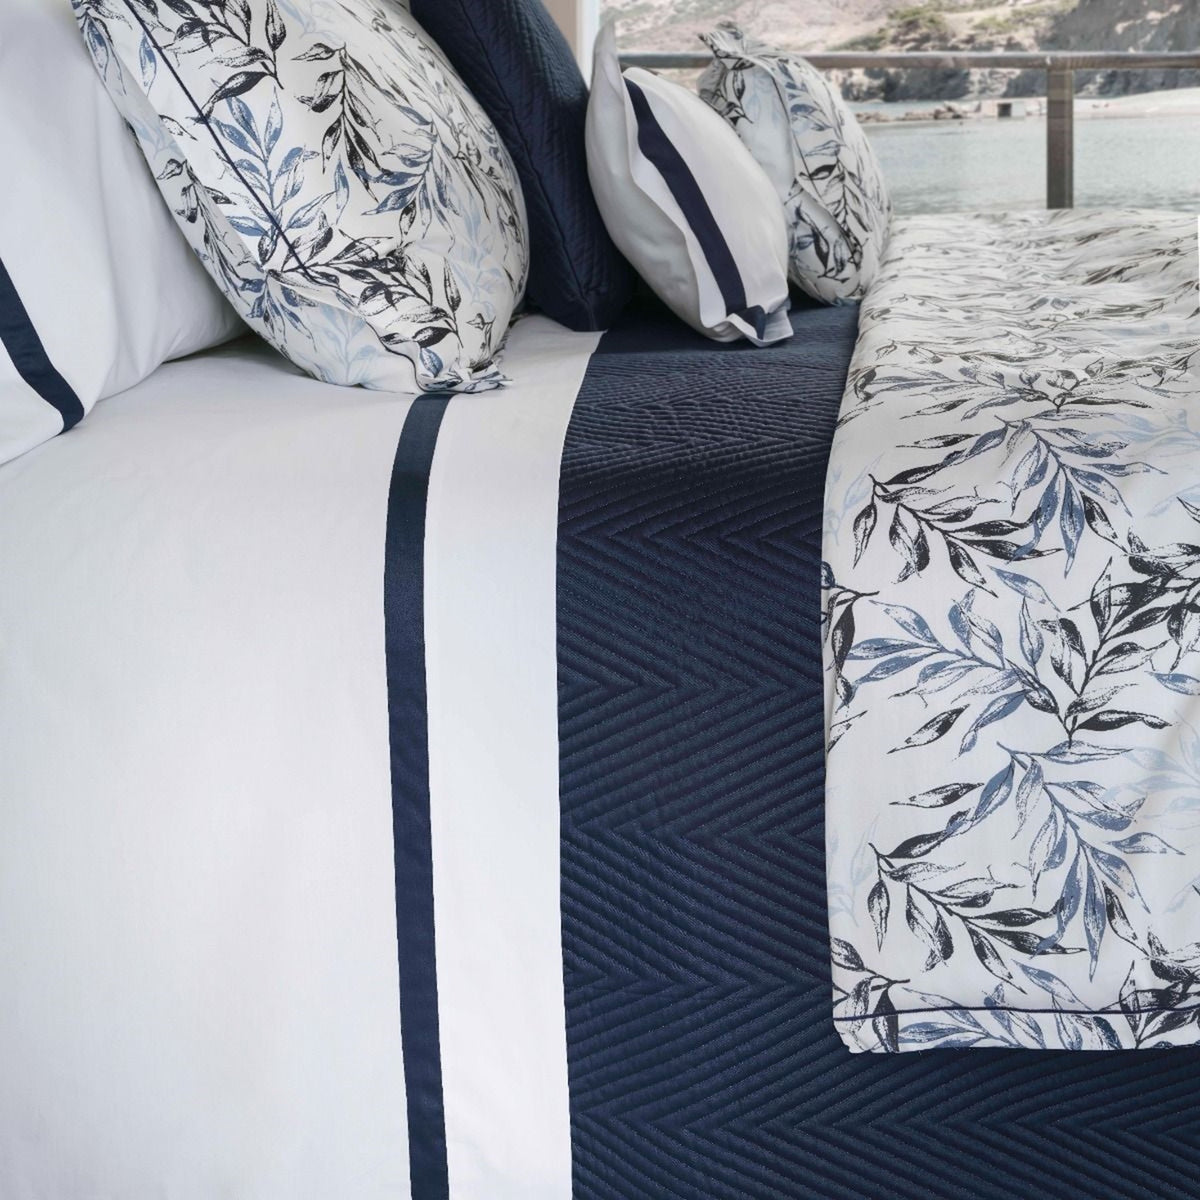 Closeup Image of Signoria Pegaso Bedding in White/Dark Blue Color